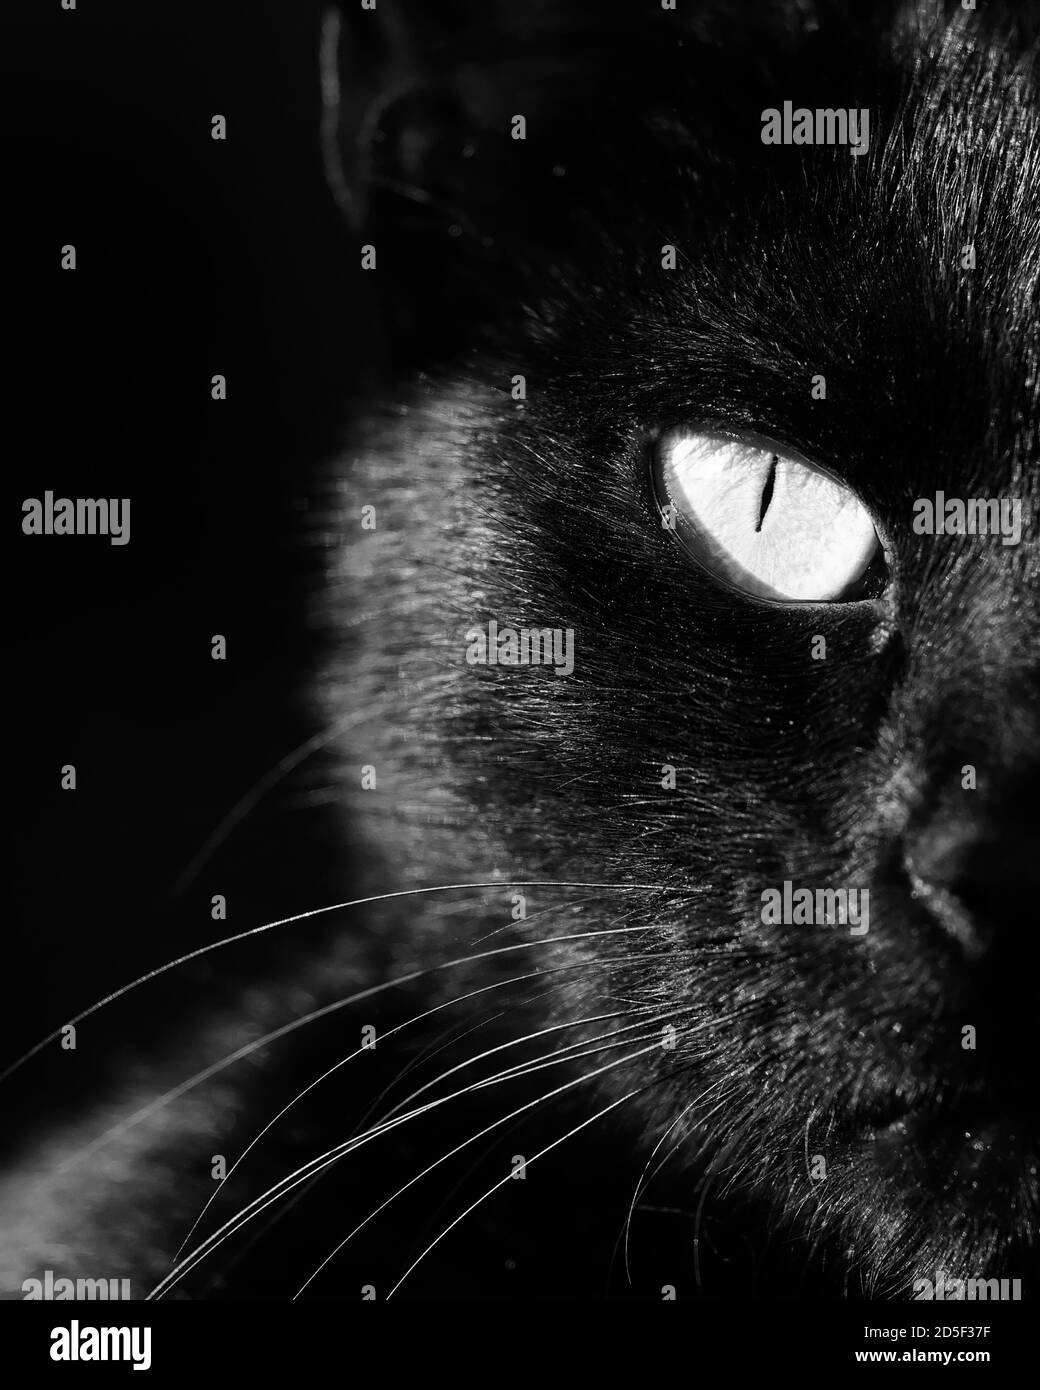 Portrait de chat noir vertical noir et blanc, détail d'un œil Banque D'Images